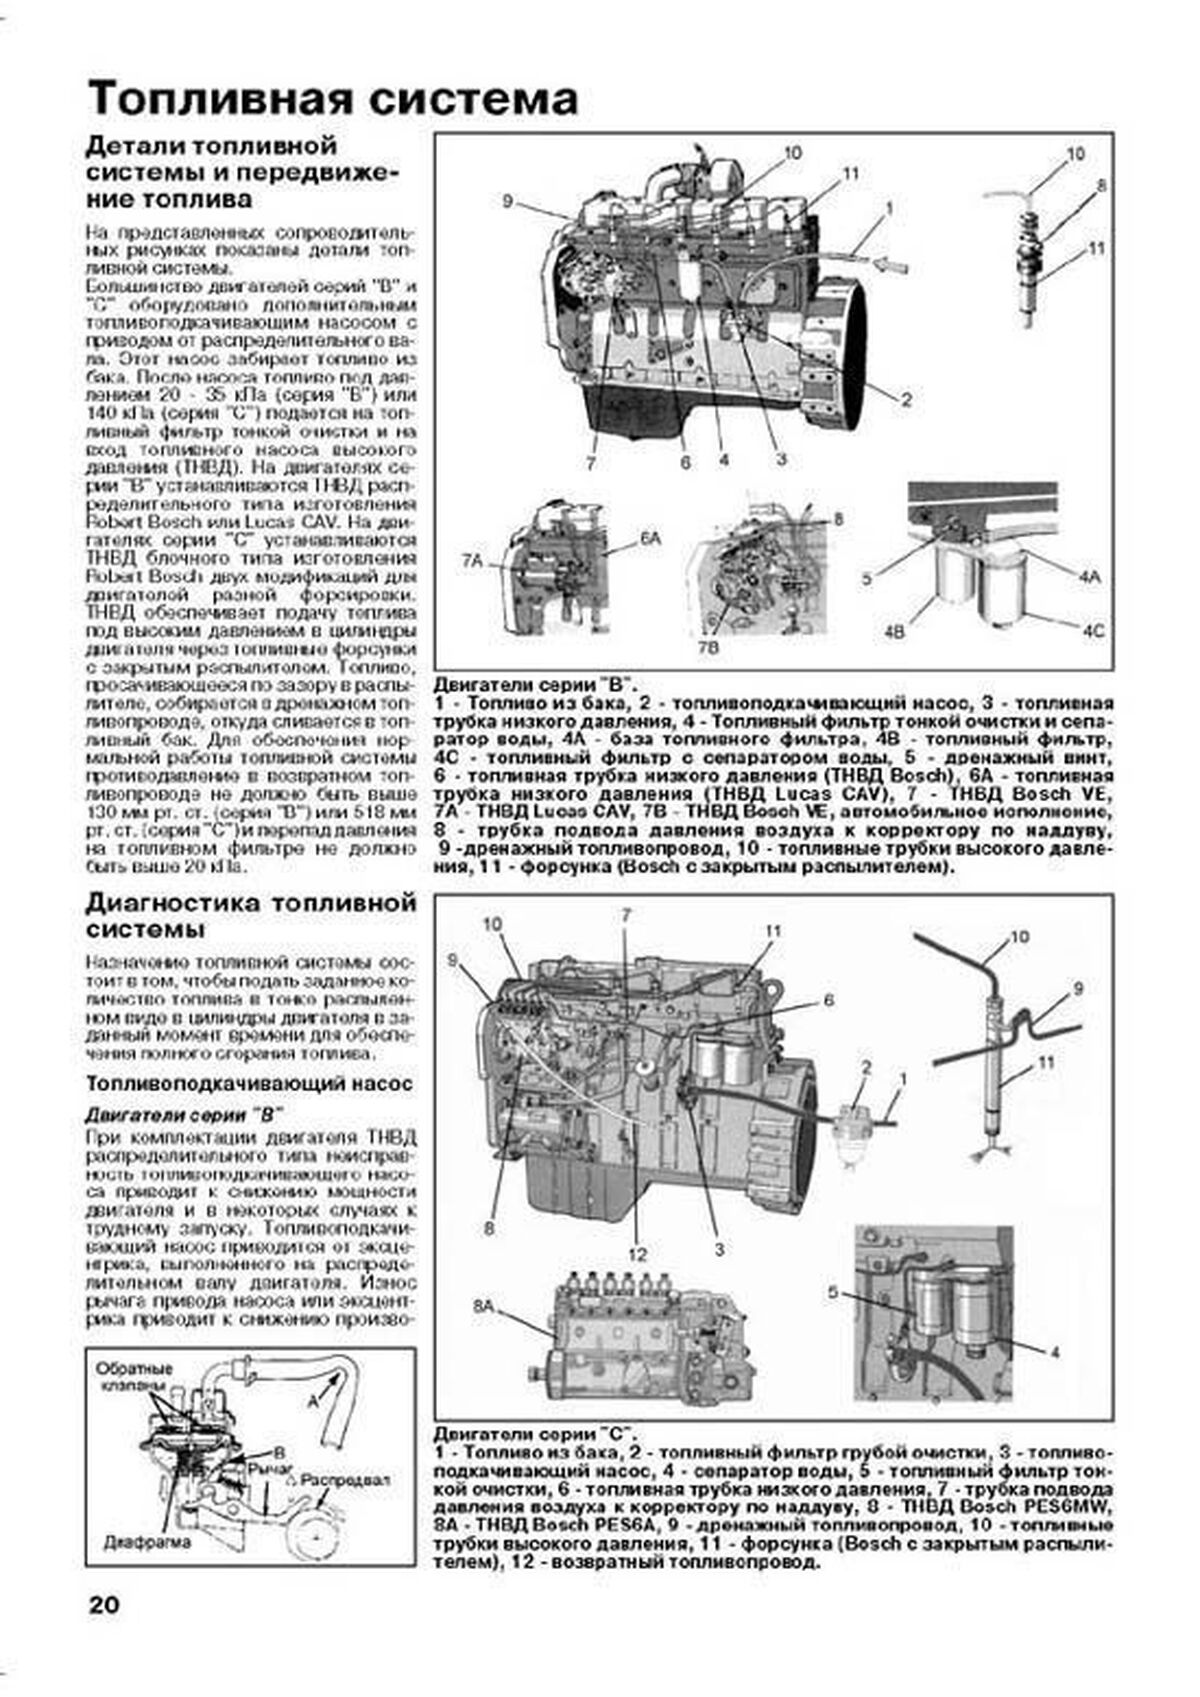 Книга: Двигатели CUMMINS 4В, 6B, 6C, их китайские аналоги EQB, EQC, рем., то | Легион-Aвтодата